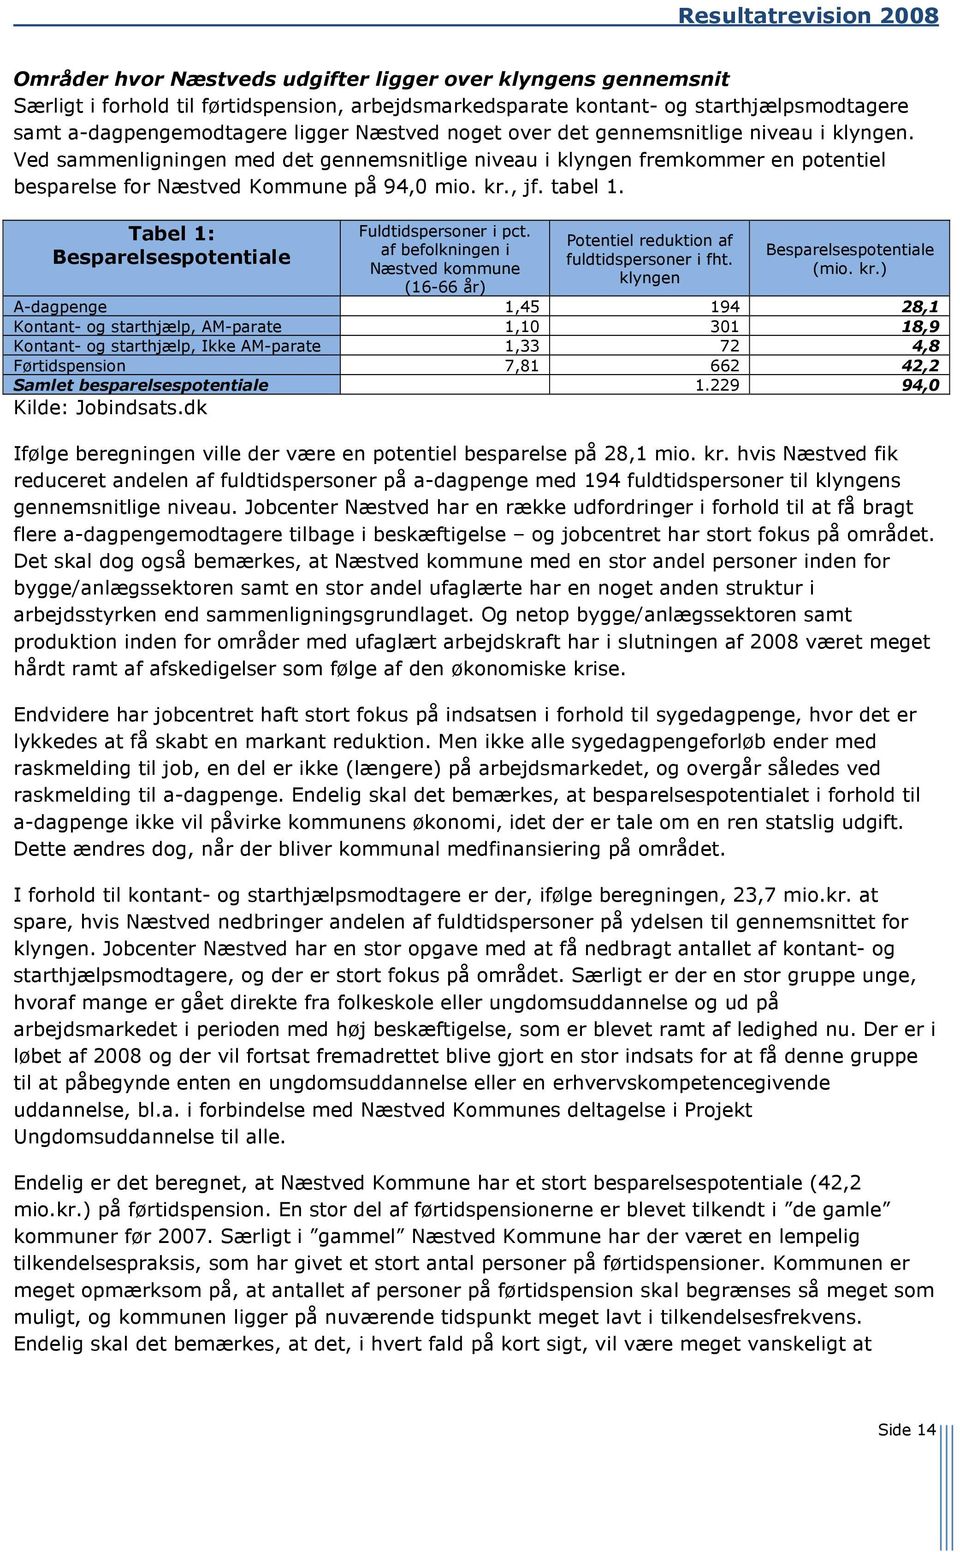 Tabel 1: Besparelsespotentiale Fuldtidspersoner i pct. af befolkningen i Næstved kommune (16-66 år) Potentiel reduktion af fuldtidspersoner i fht. klyngen Besparelsespotentiale (mio. kr.